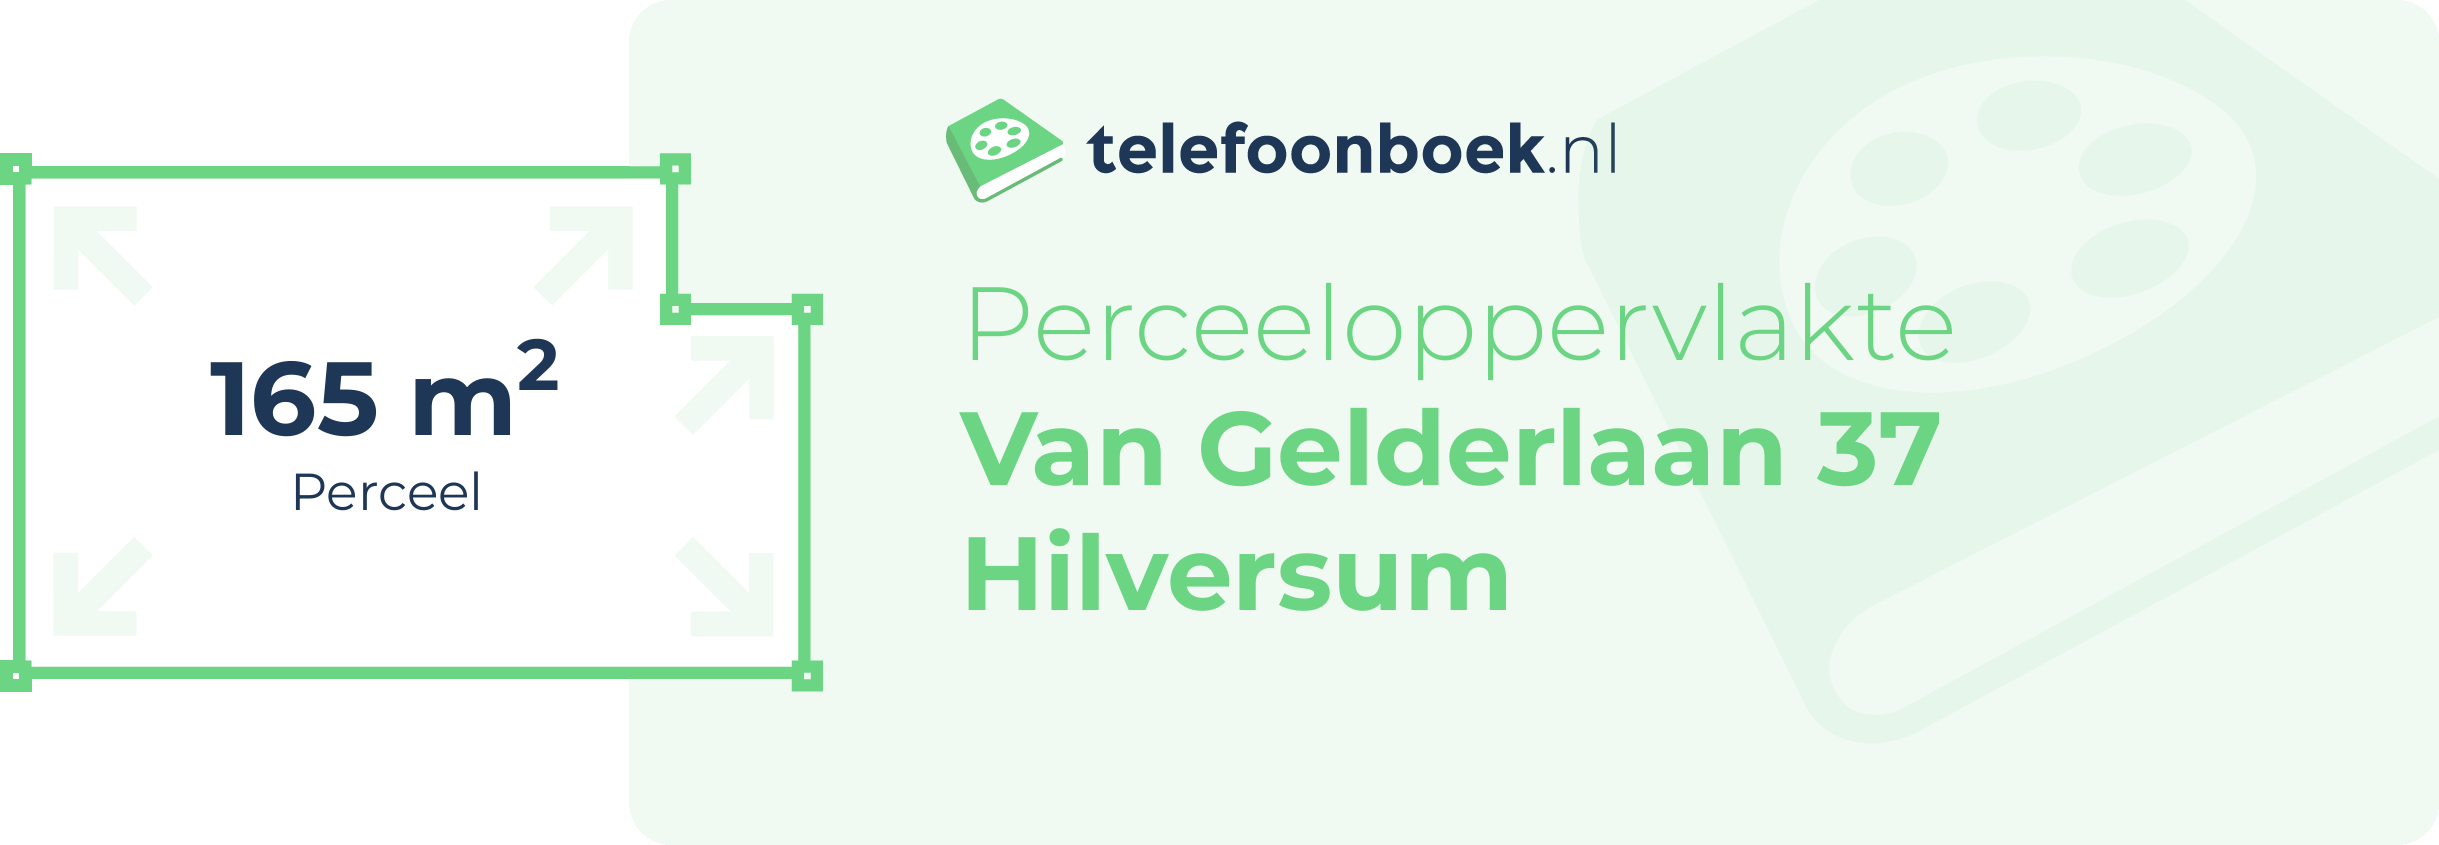 Perceeloppervlakte Van Gelderlaan 37 Hilversum